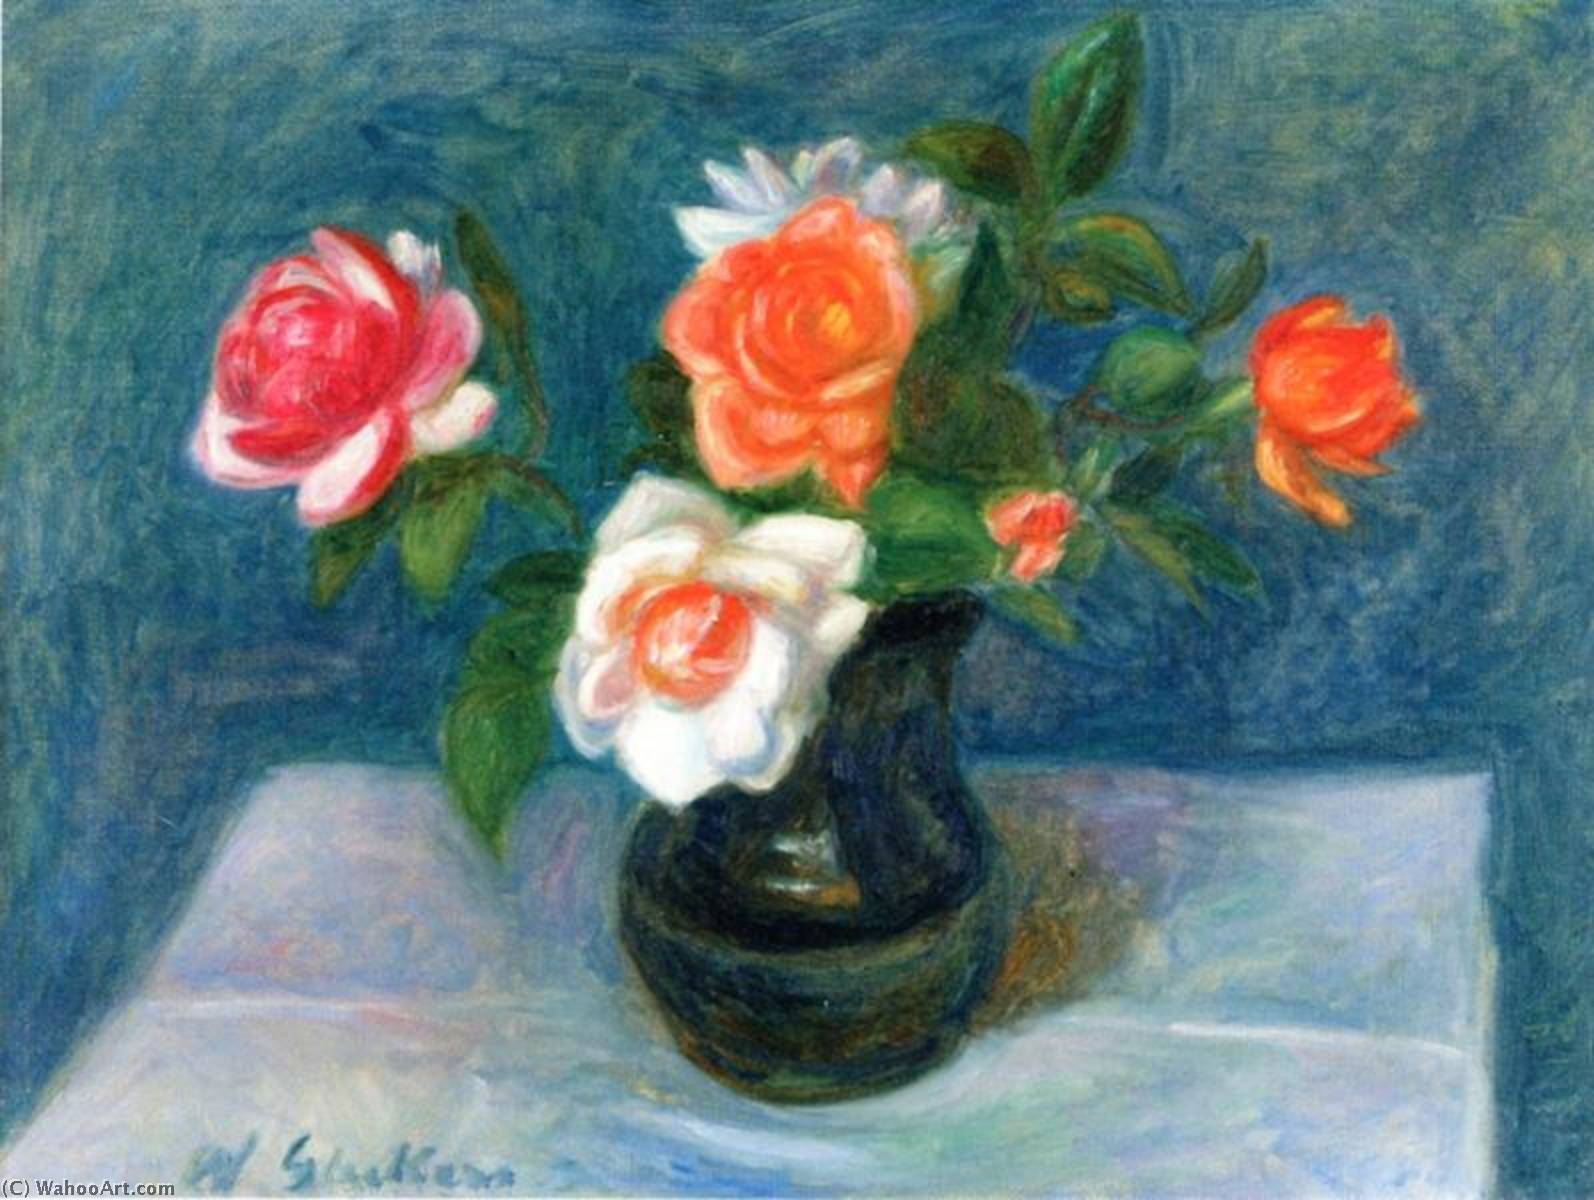 WikiOO.org - Enciklopedija dailės - Tapyba, meno kuriniai William James Glackens - Flowers on a Table